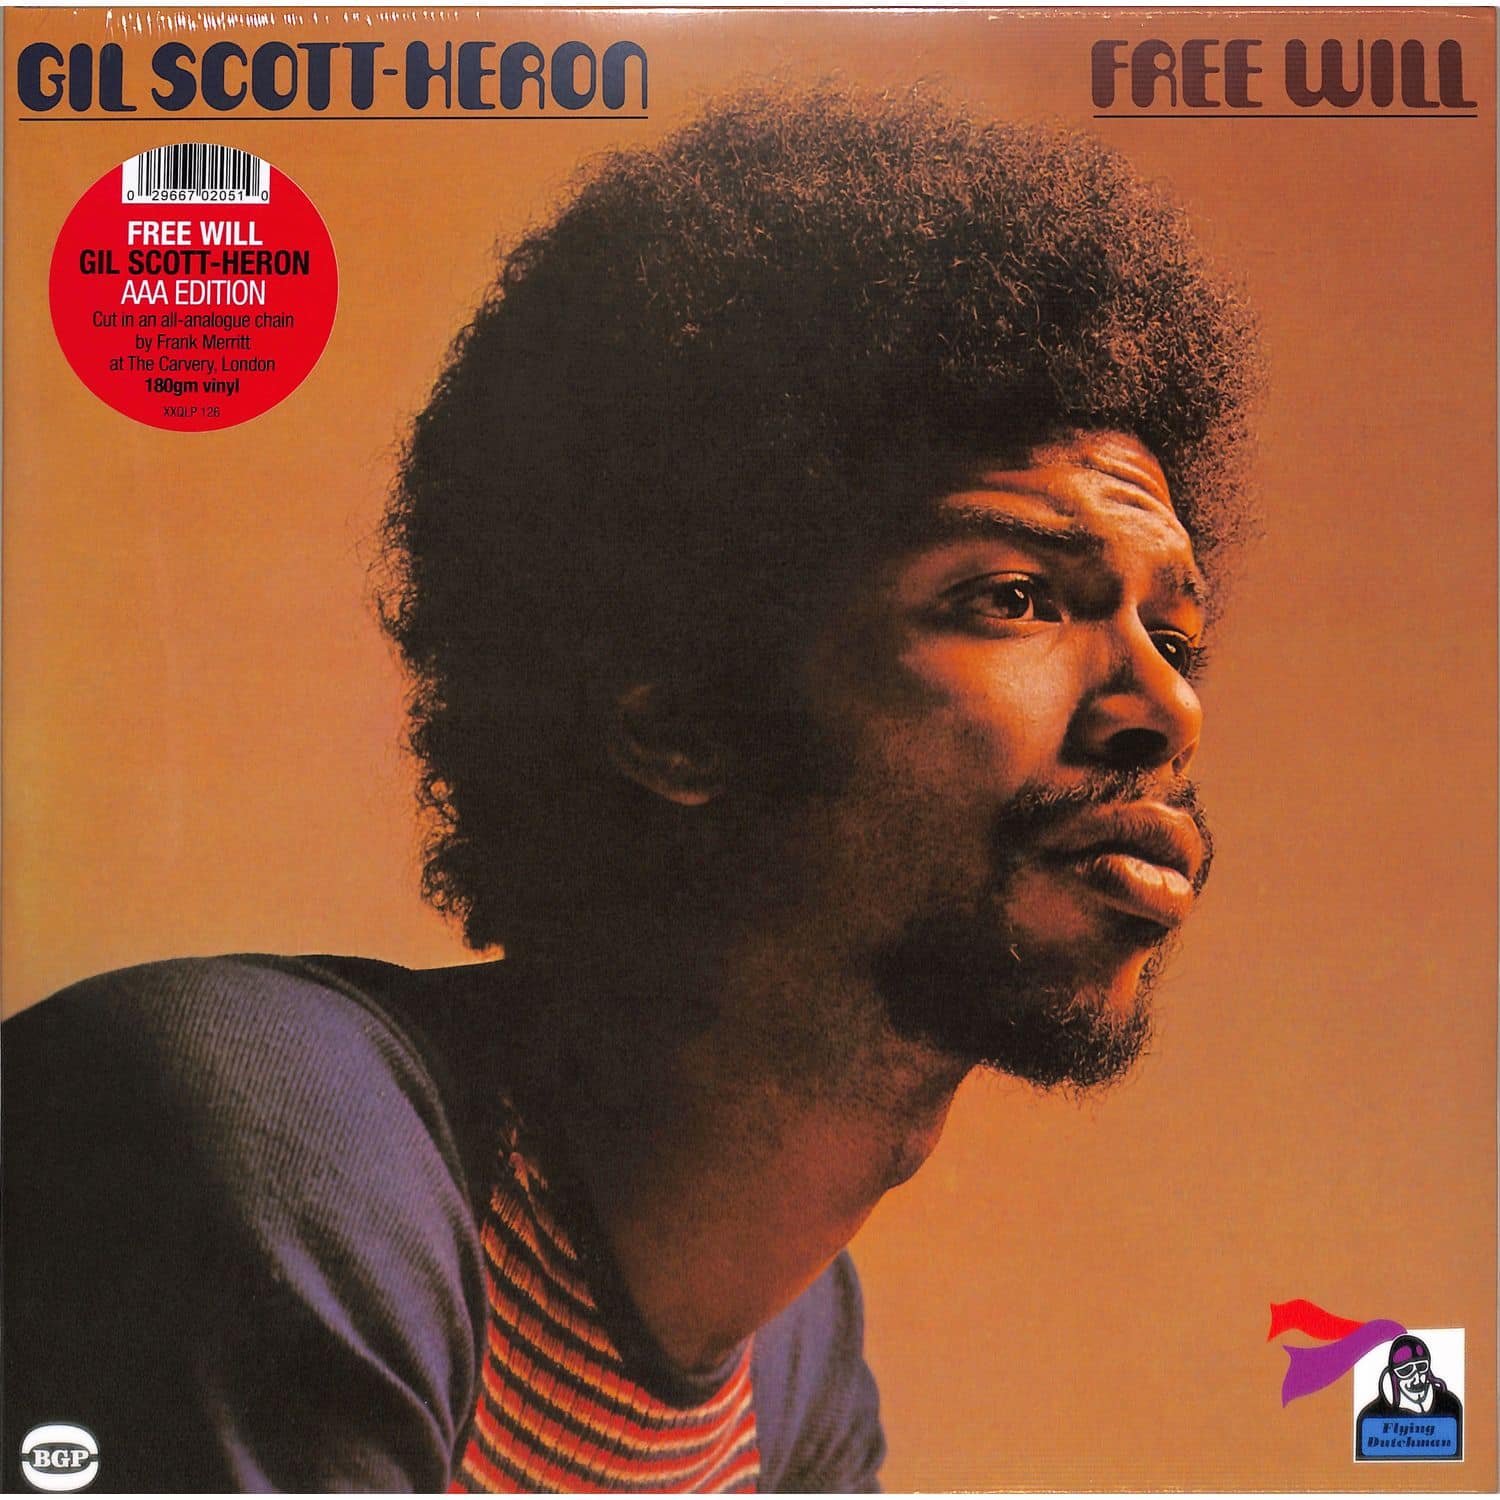 Gil Scott-Heron - FREE WILL 